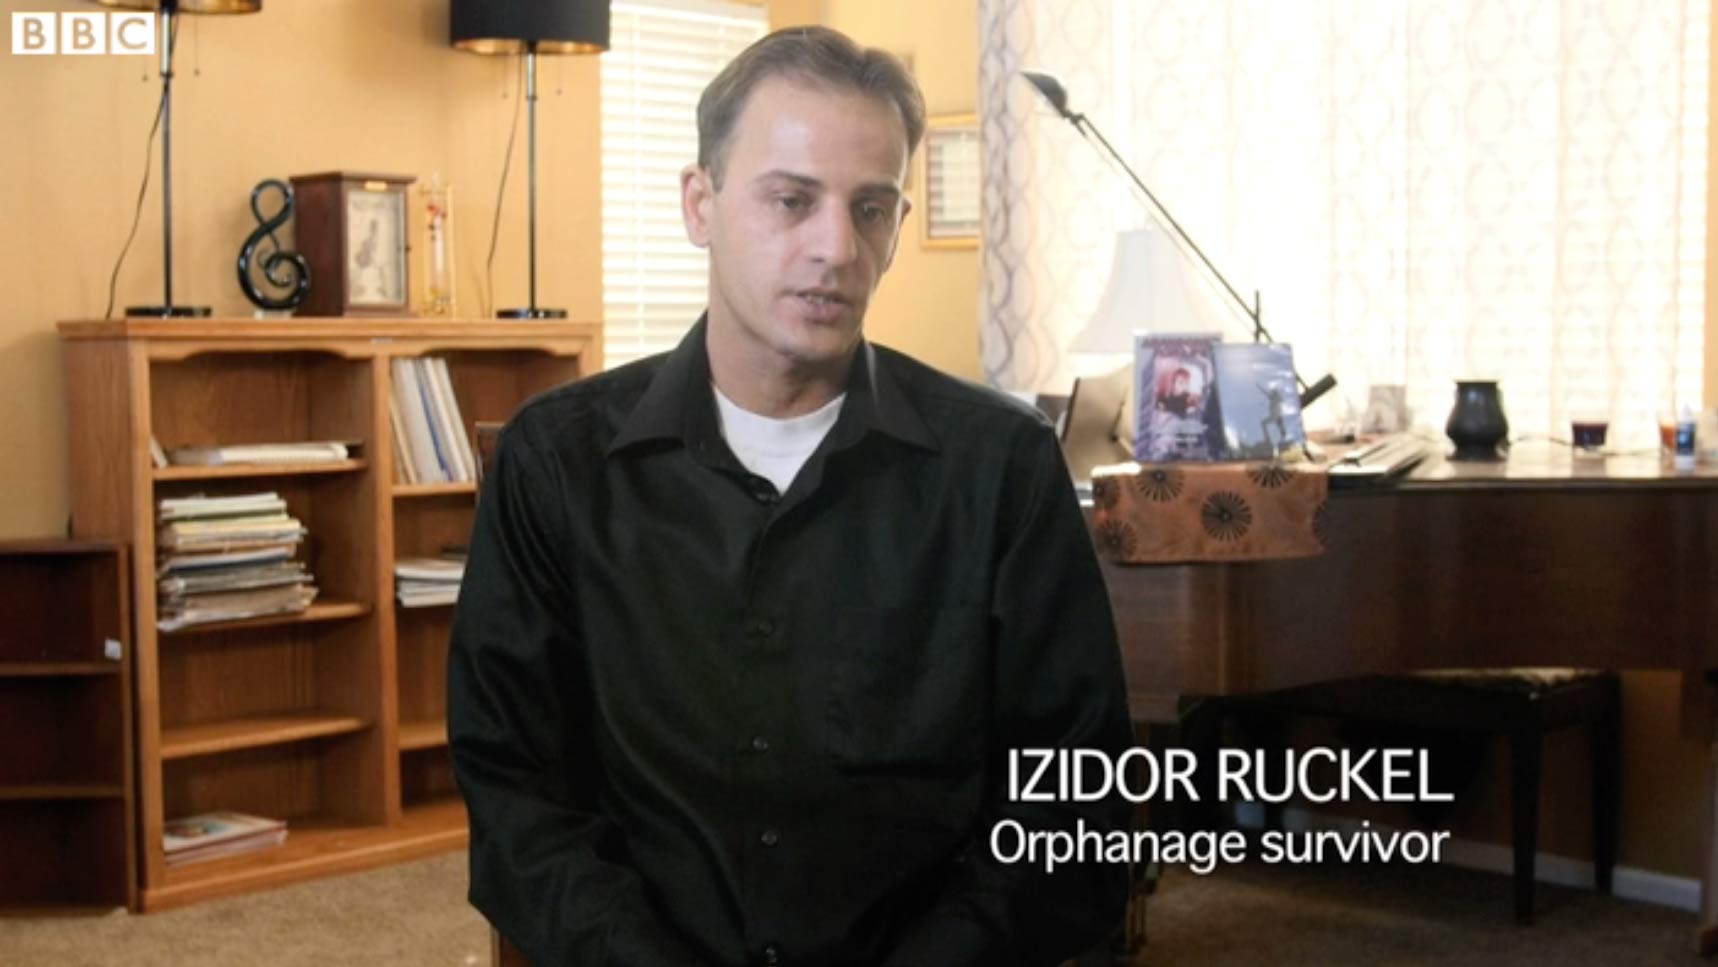 Izidor interviewed in BBC video